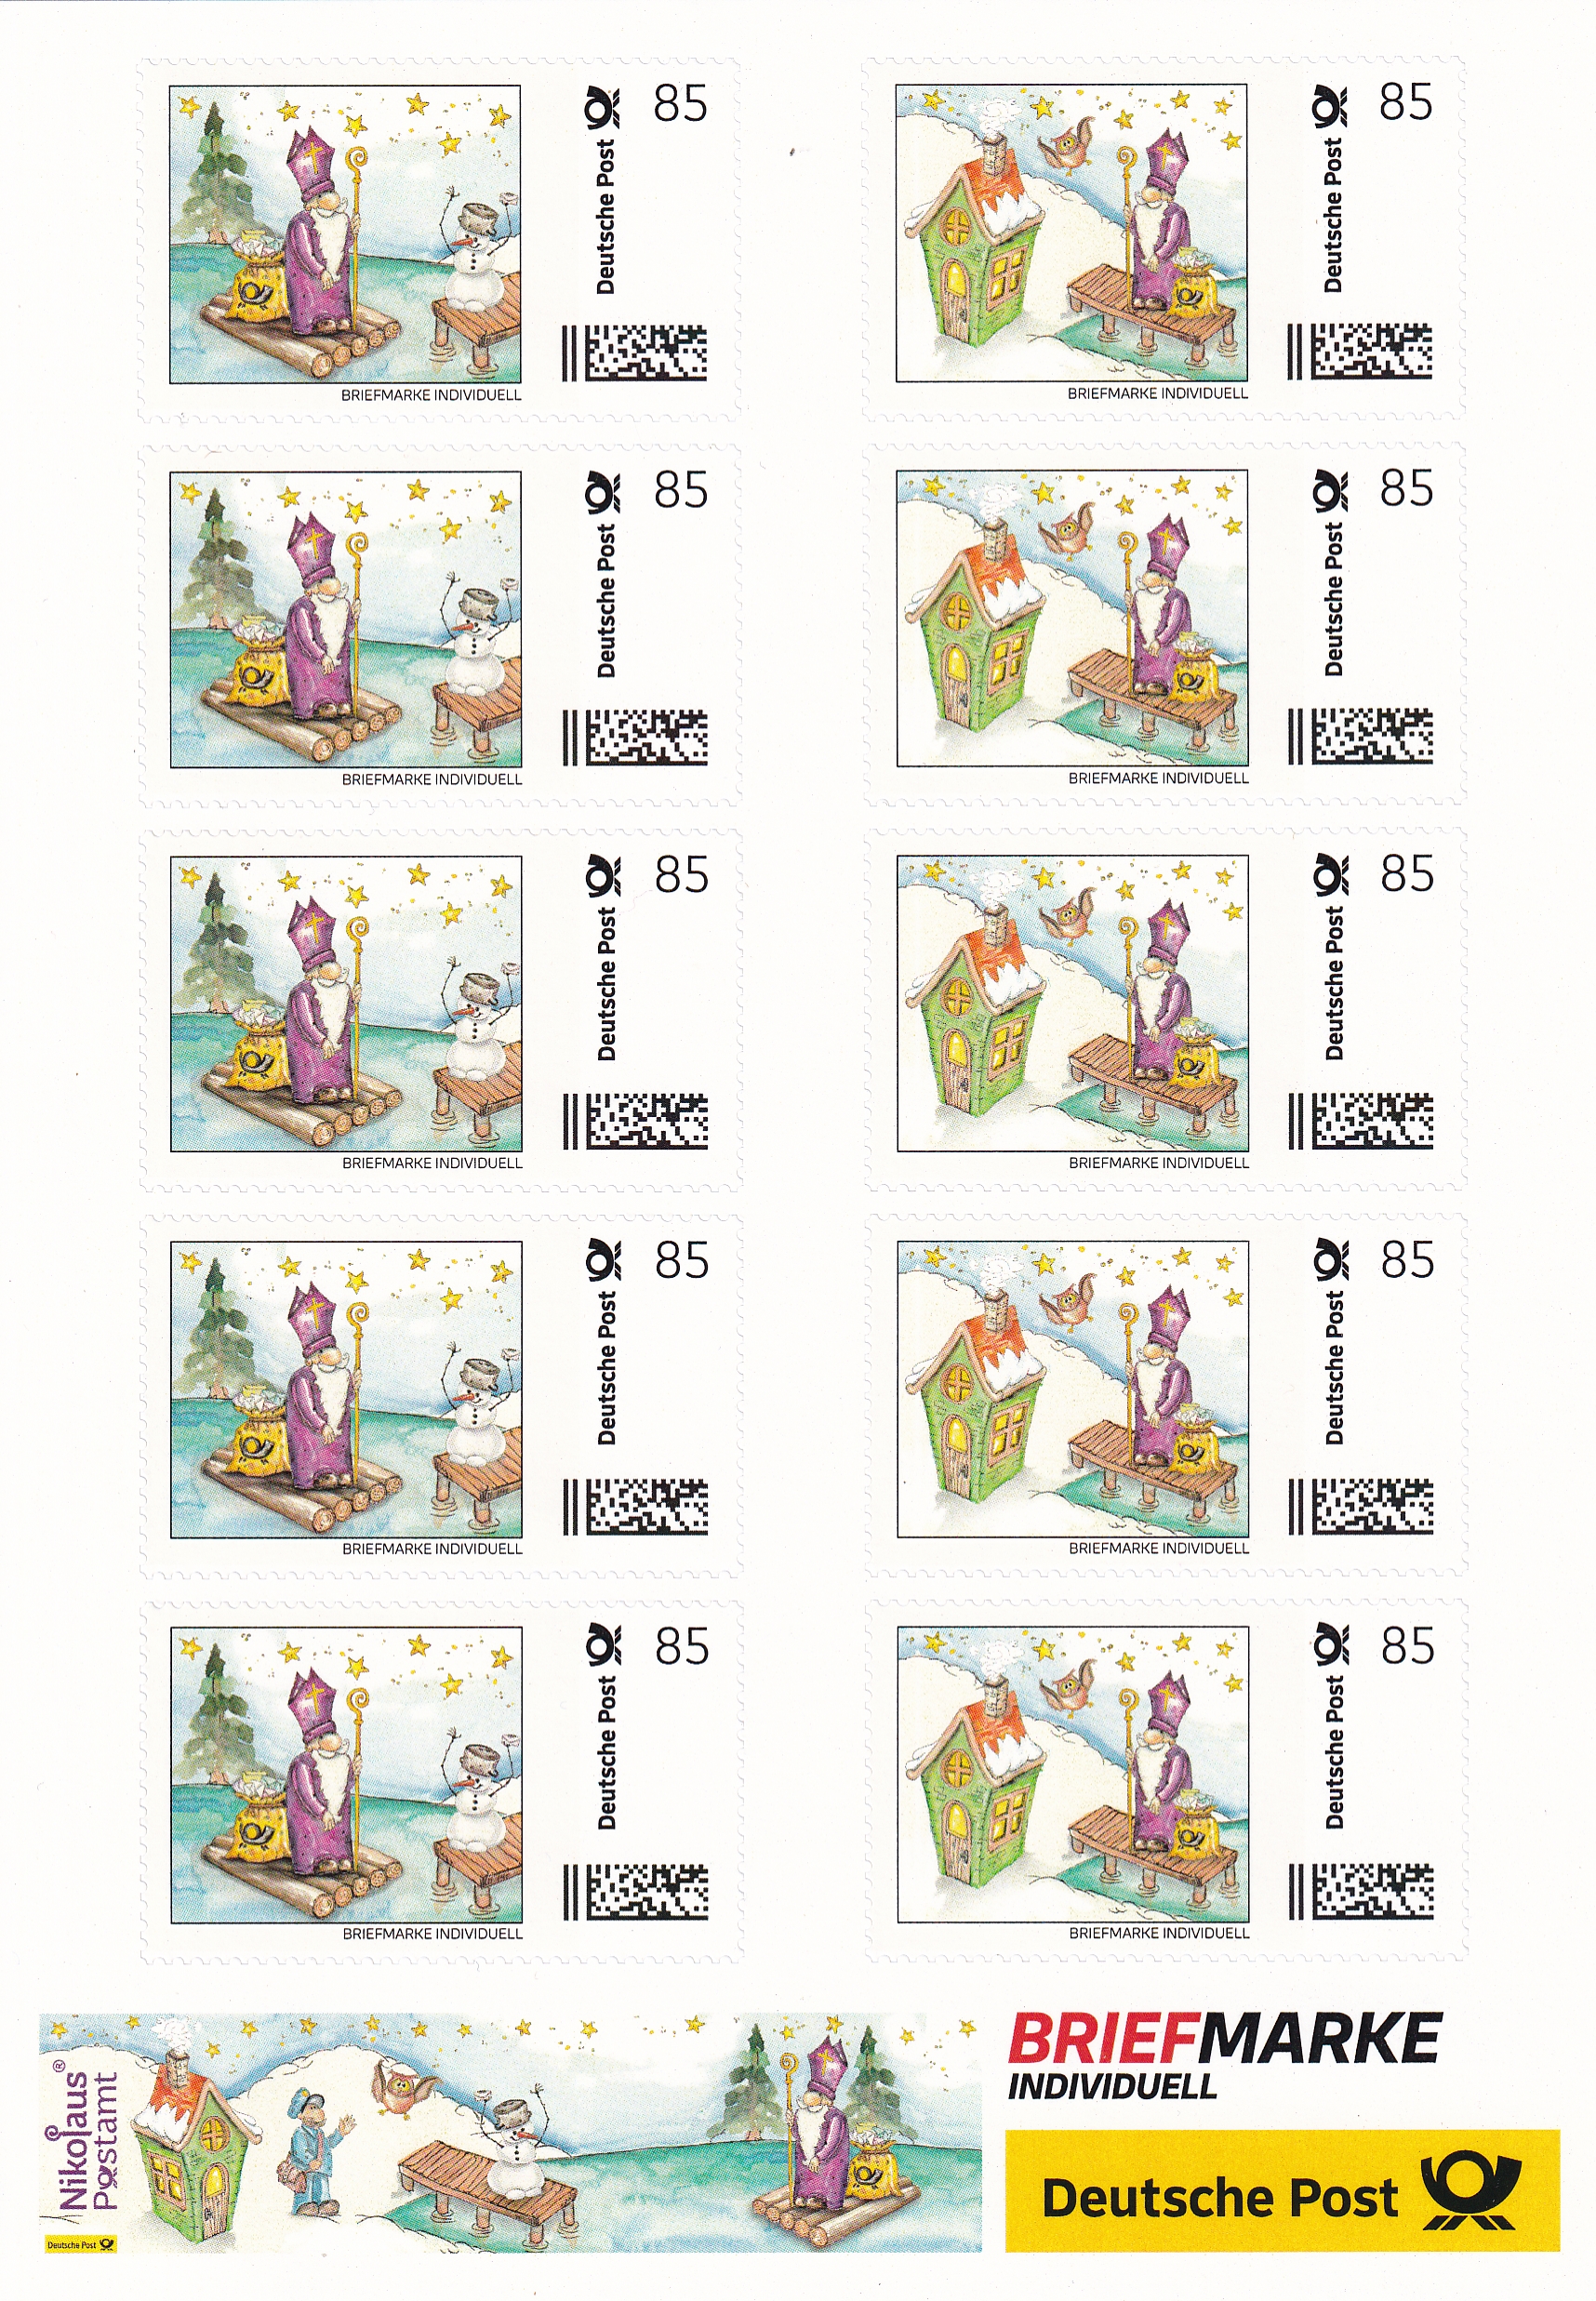 10 Nikolaus Briefmarken Individuell - Nikolausfloss + Nikolaushaus - auf DIN A5 Schmuckbogen